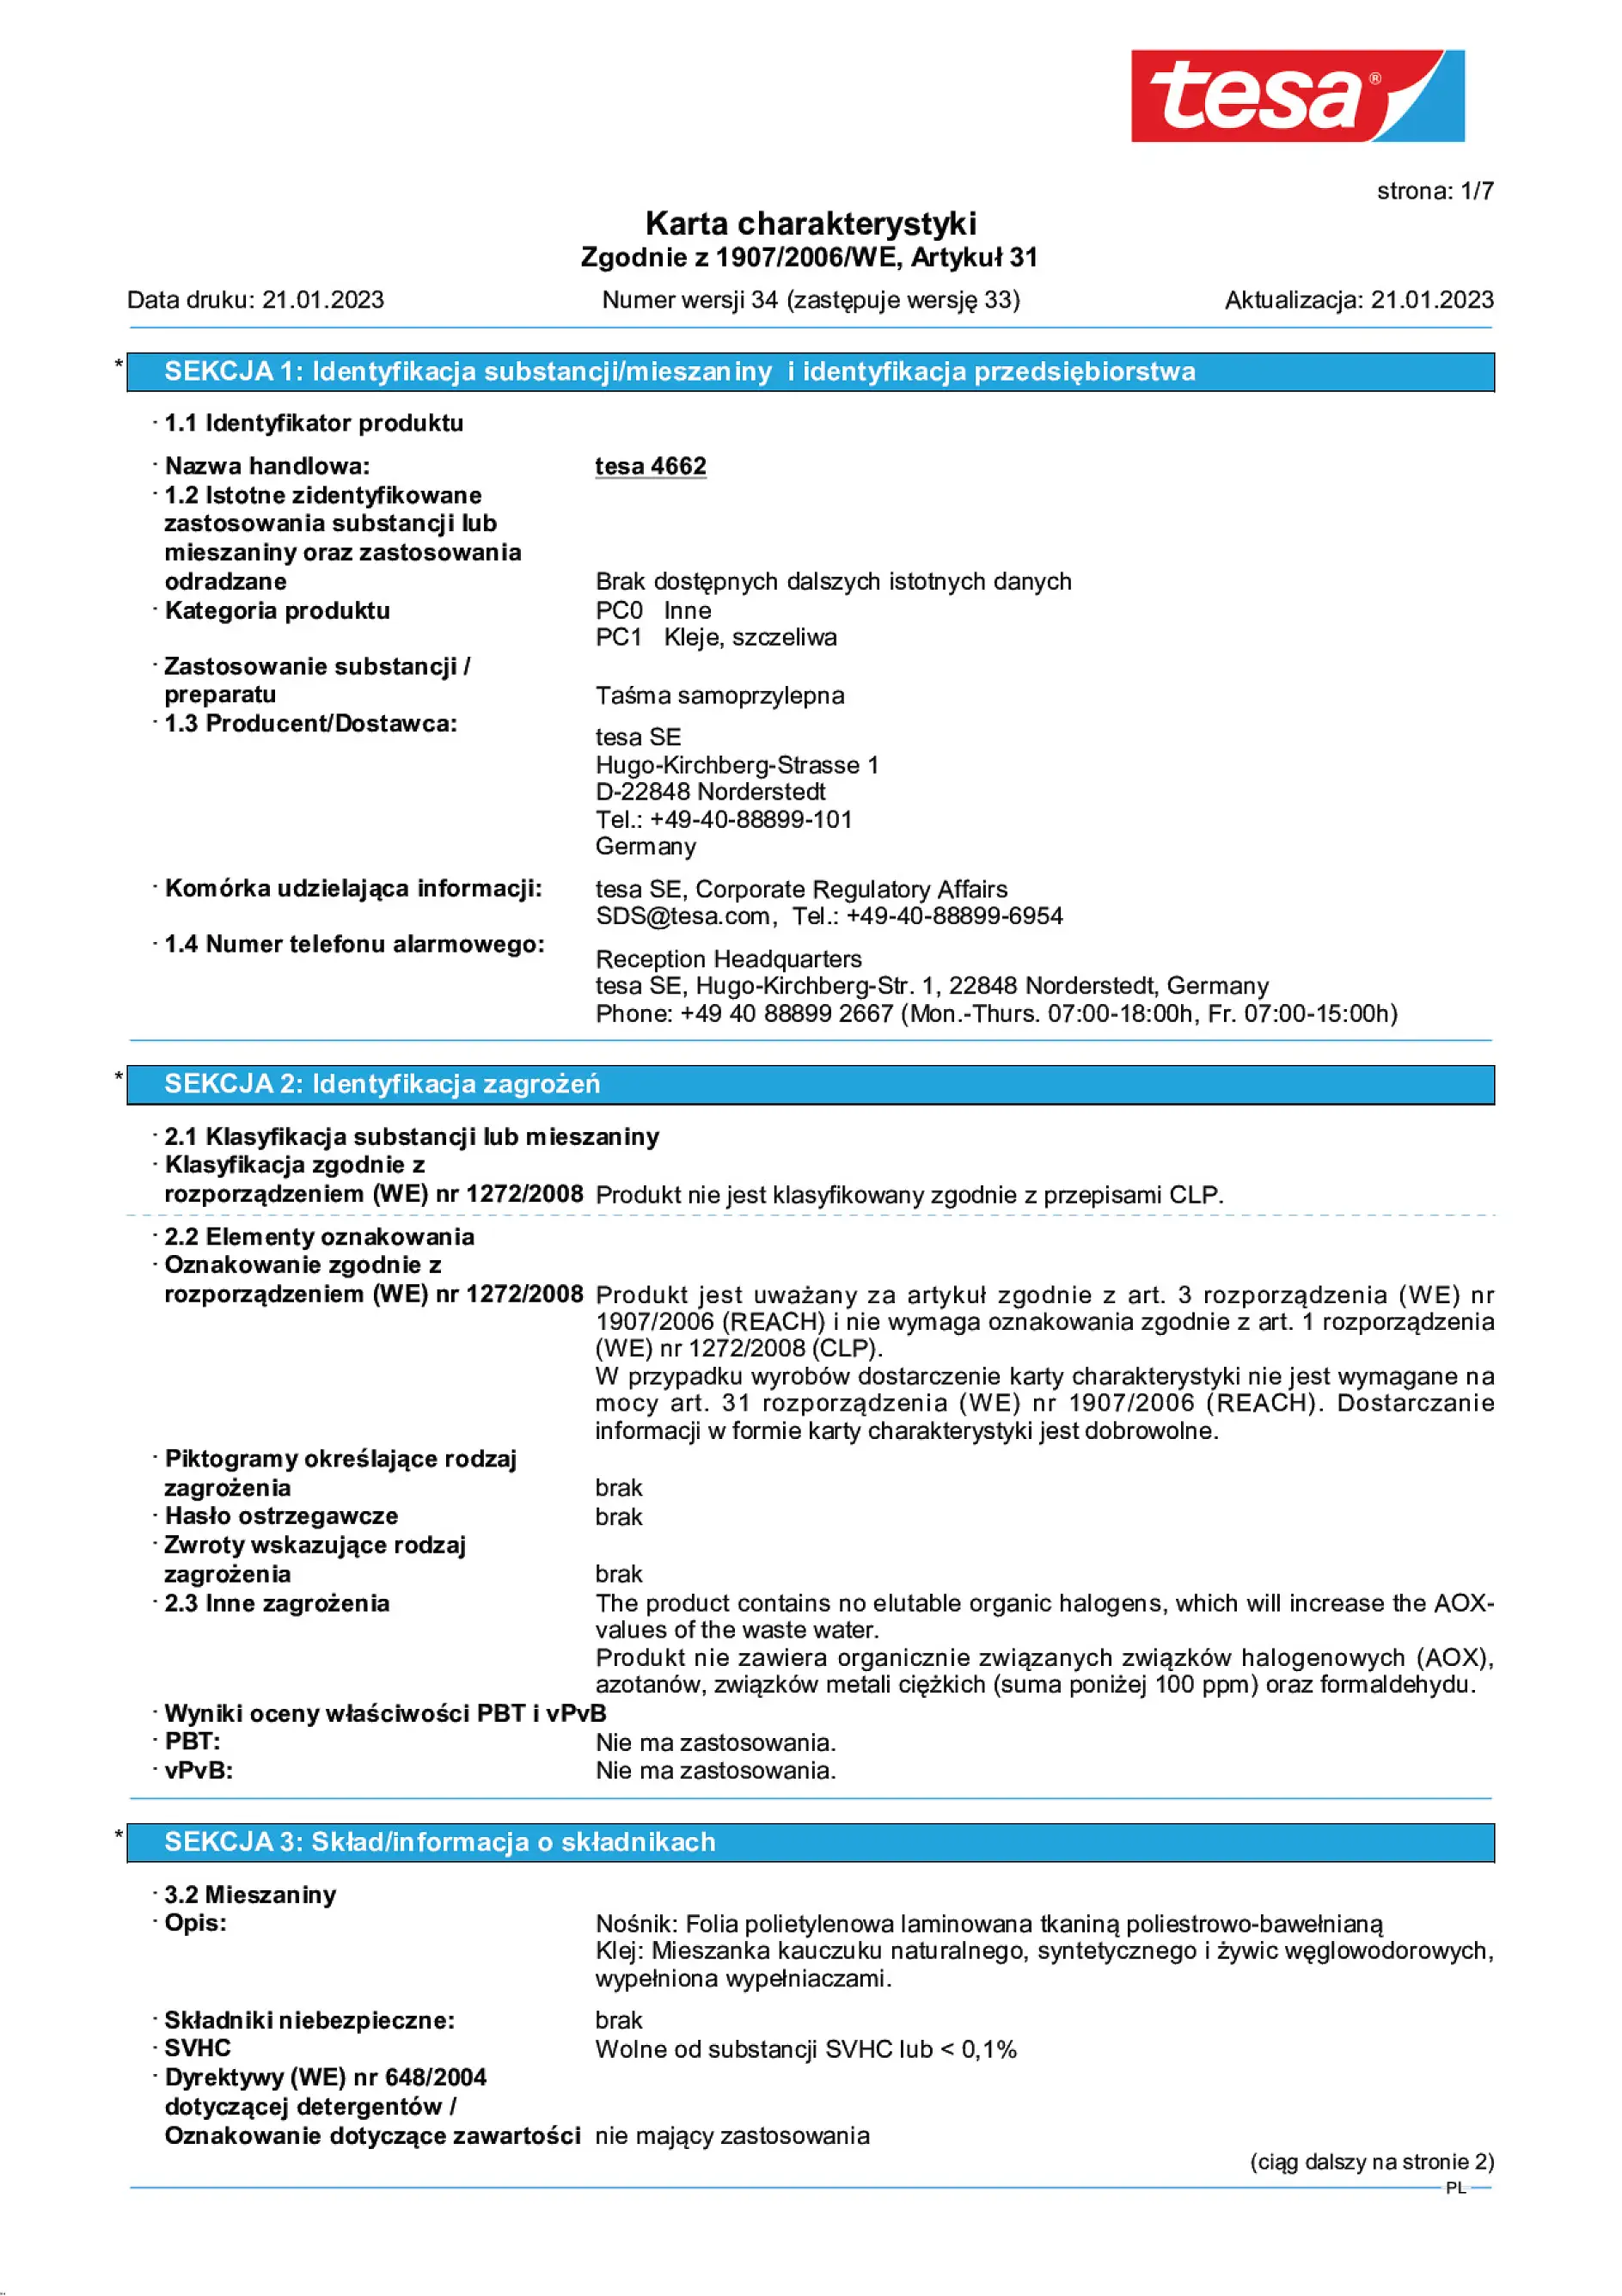 Safety data sheet_tesa® Professional 4662_pl-PL_v34